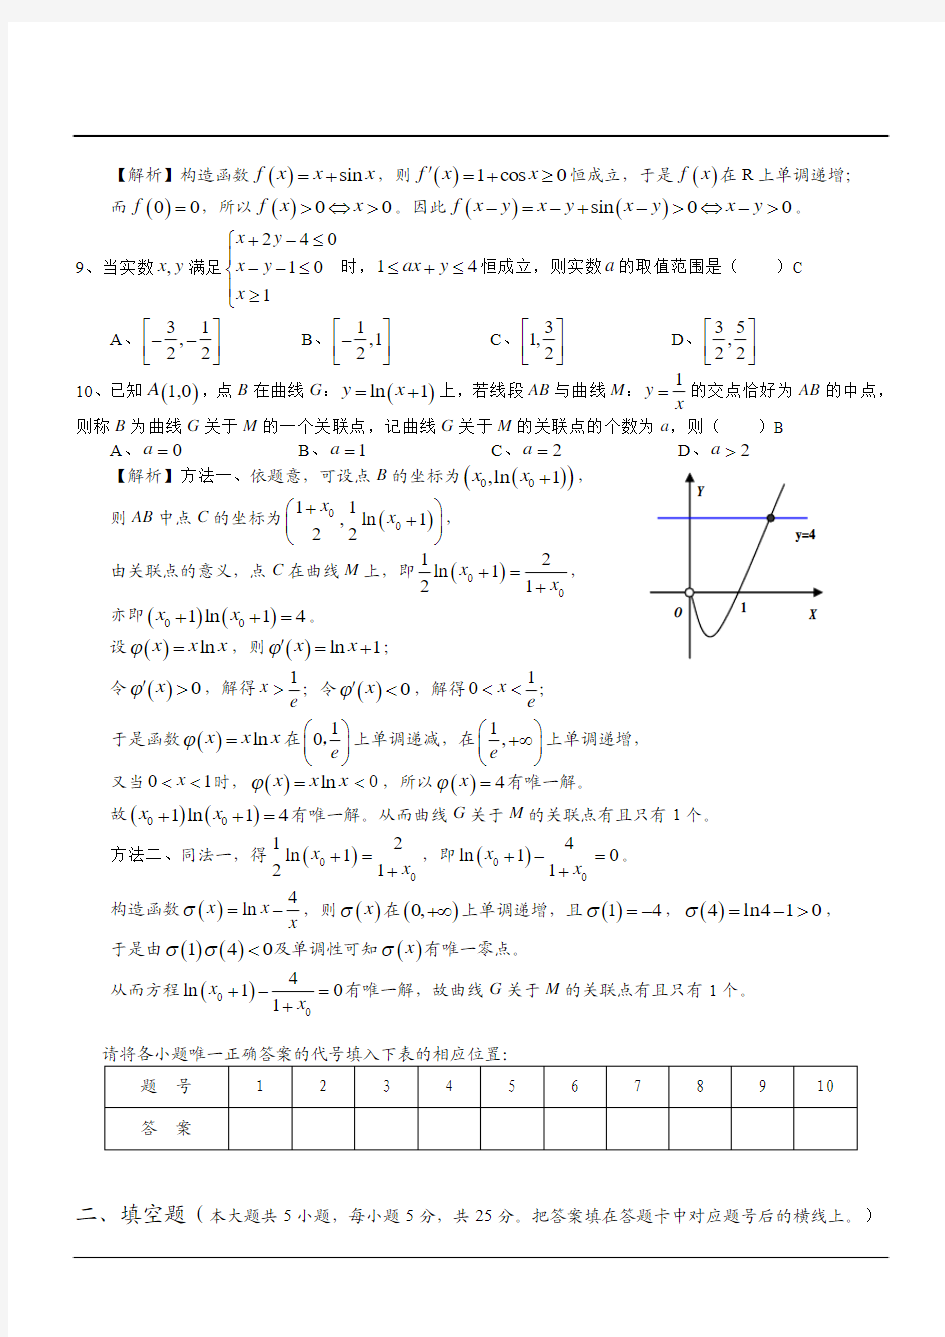 湖南省长沙一中2015届高三月考试卷(一)数学(理)